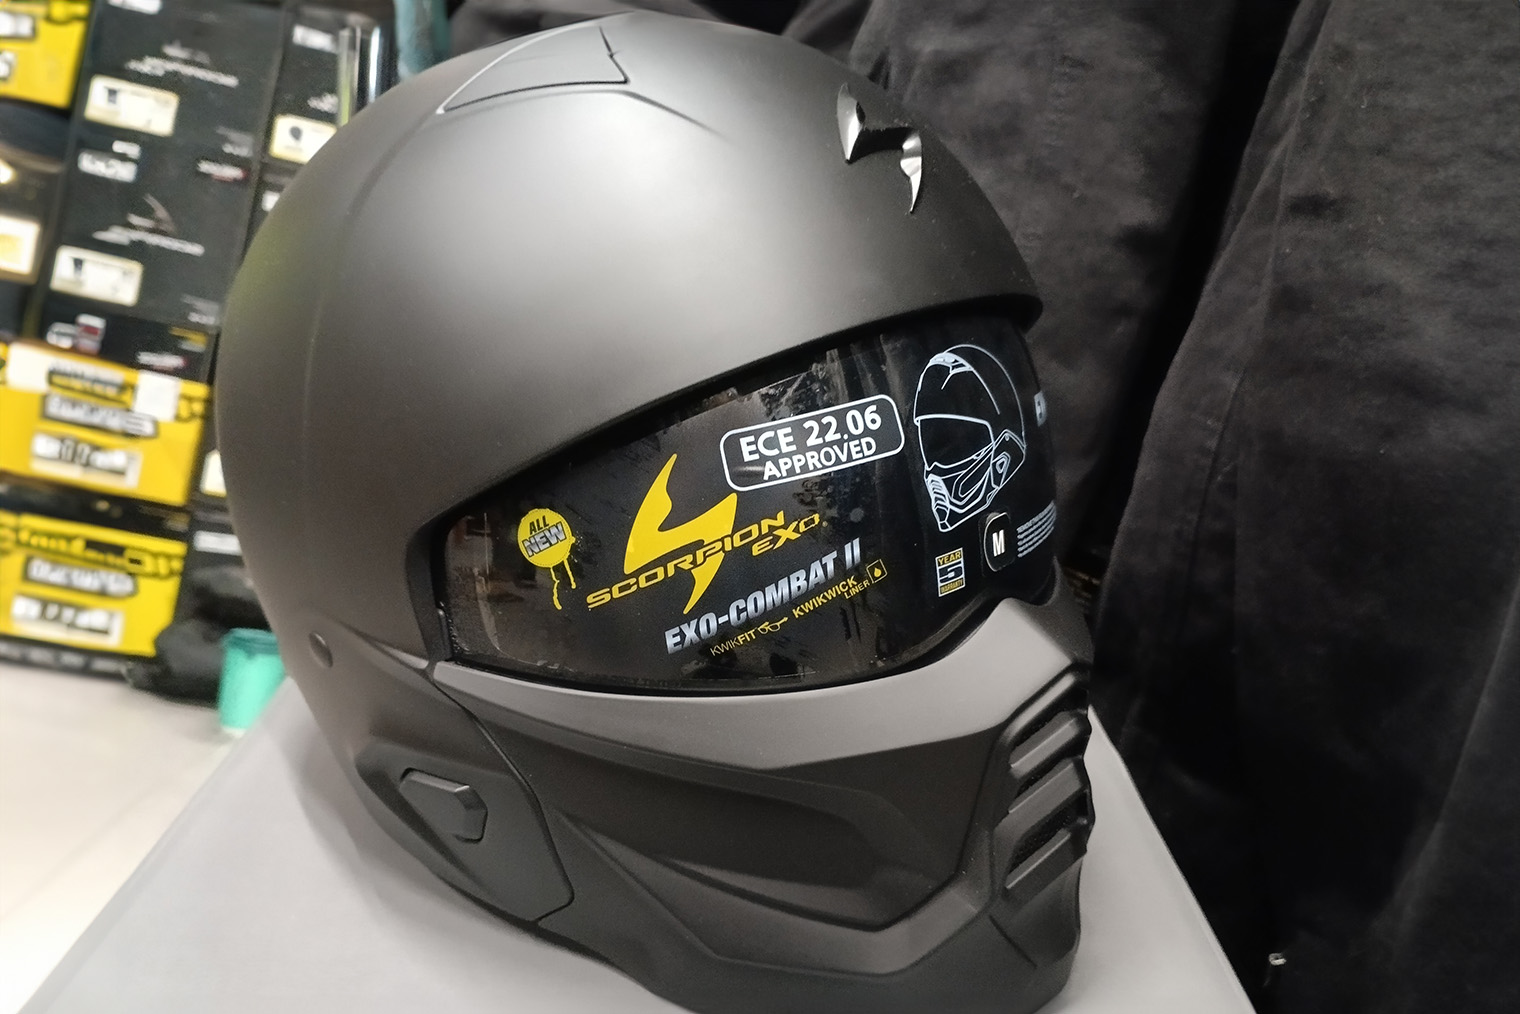 С надетой ветрозащитной маской шлем⁠-⁠трансформер Scorpion Exo Combat II похож на интеграл